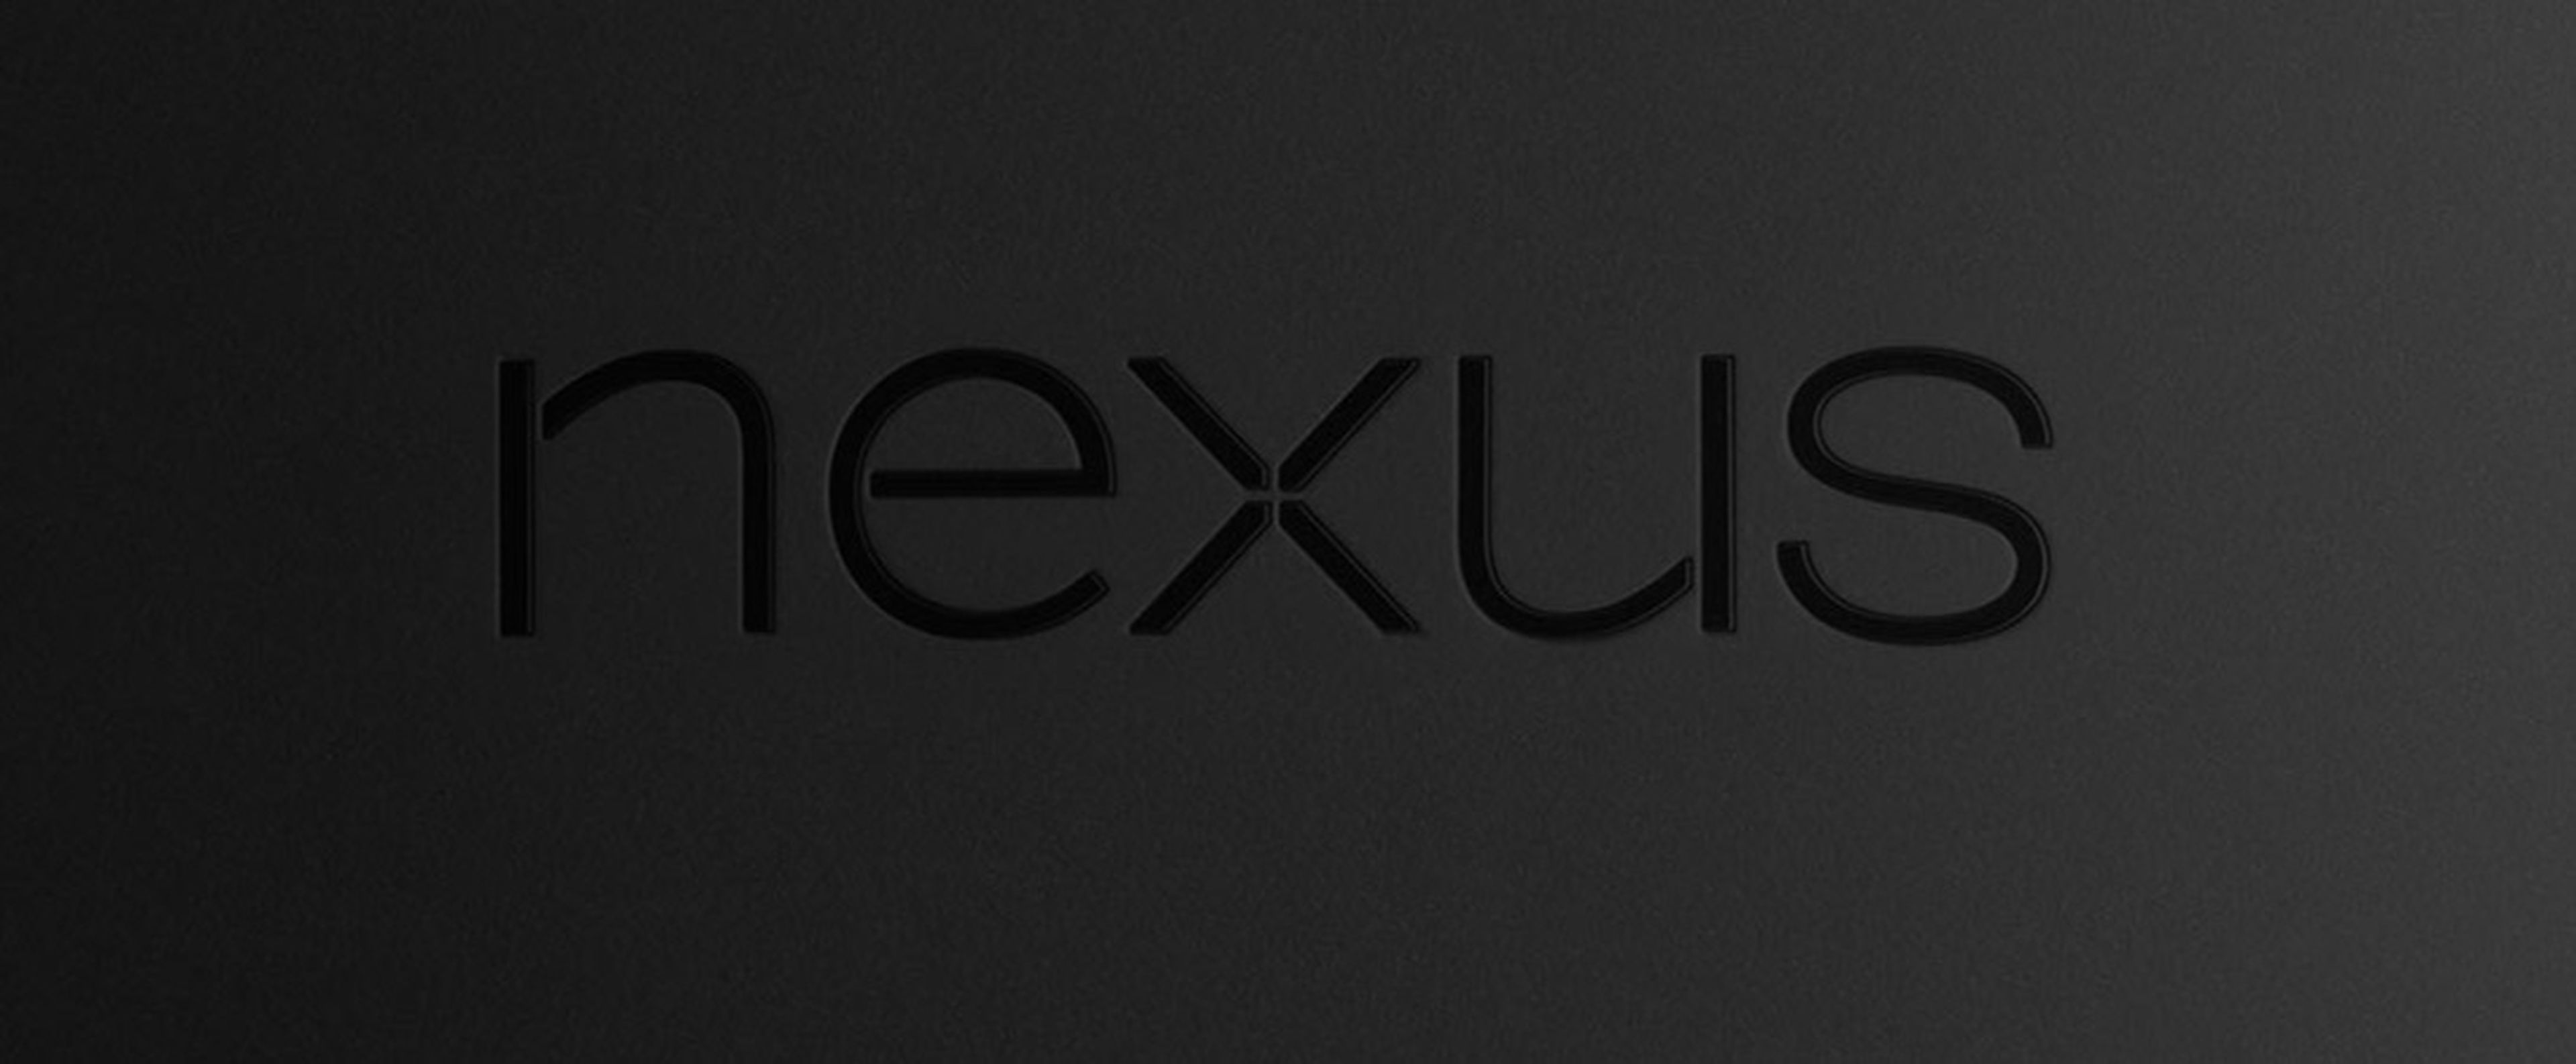 Filtrado en vídeo el Nexus 5 de Google